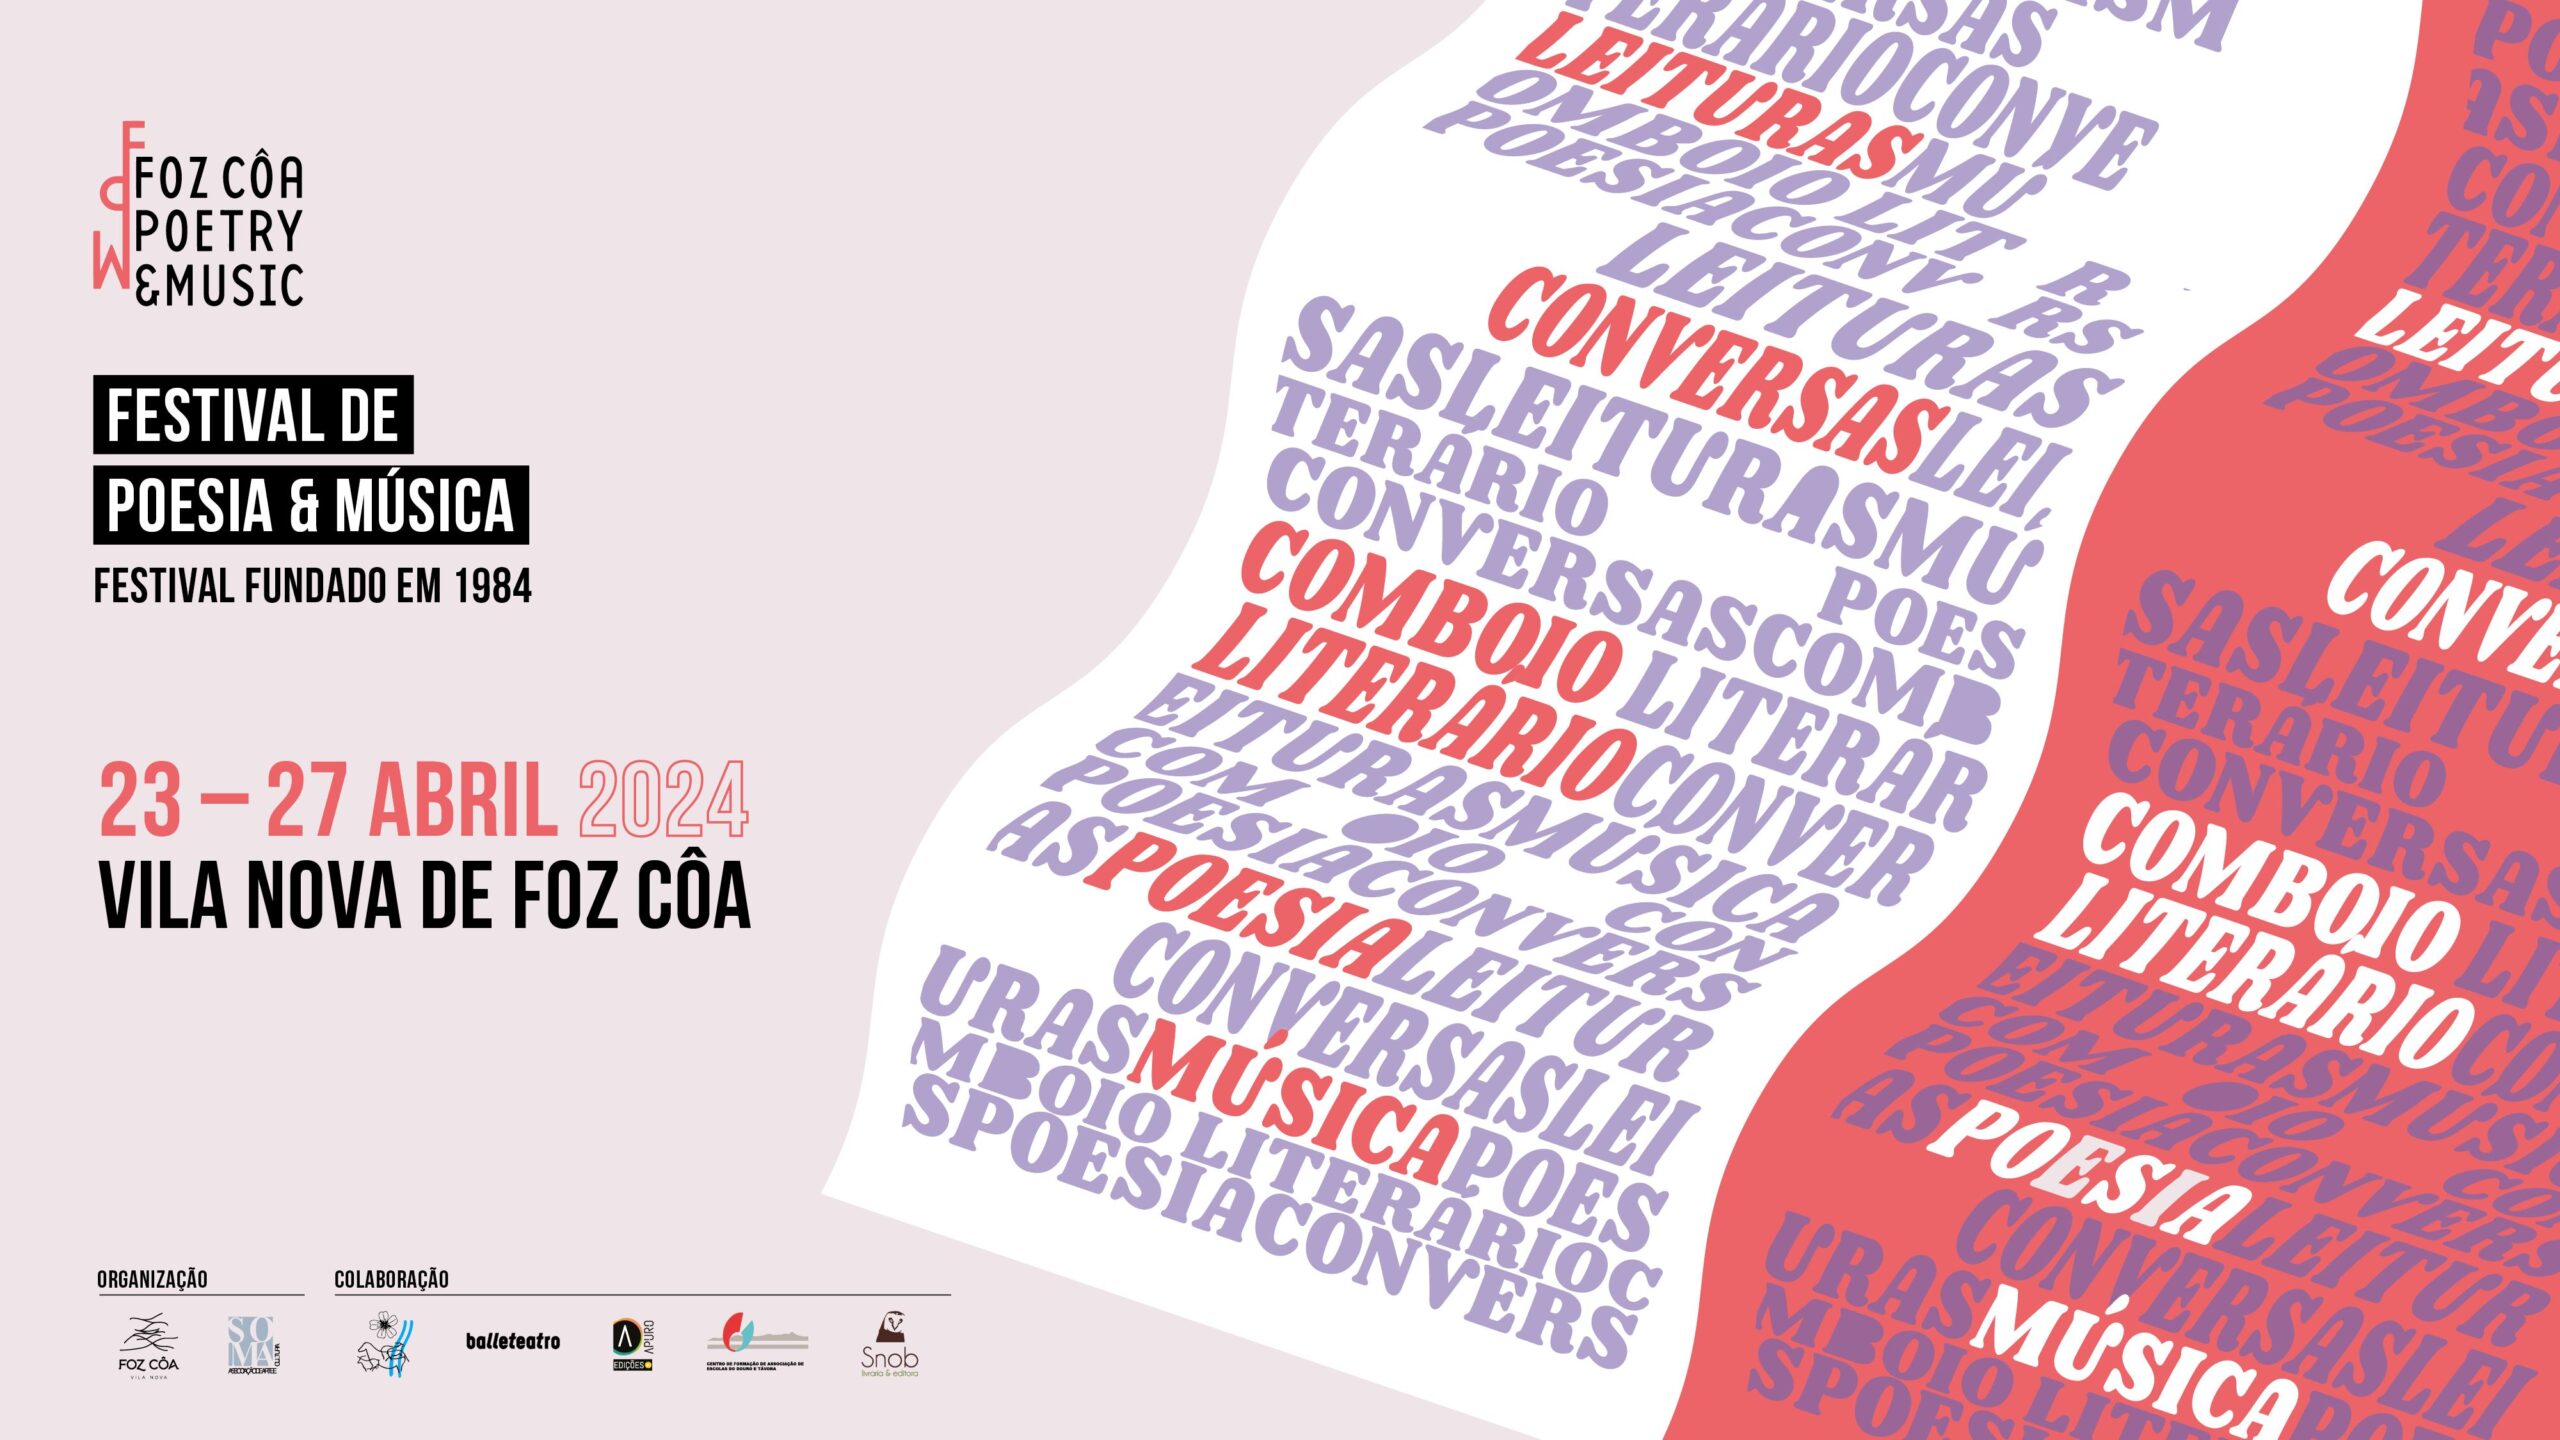 Capa do Evento Festival de Poesia e Música de Foz Côa